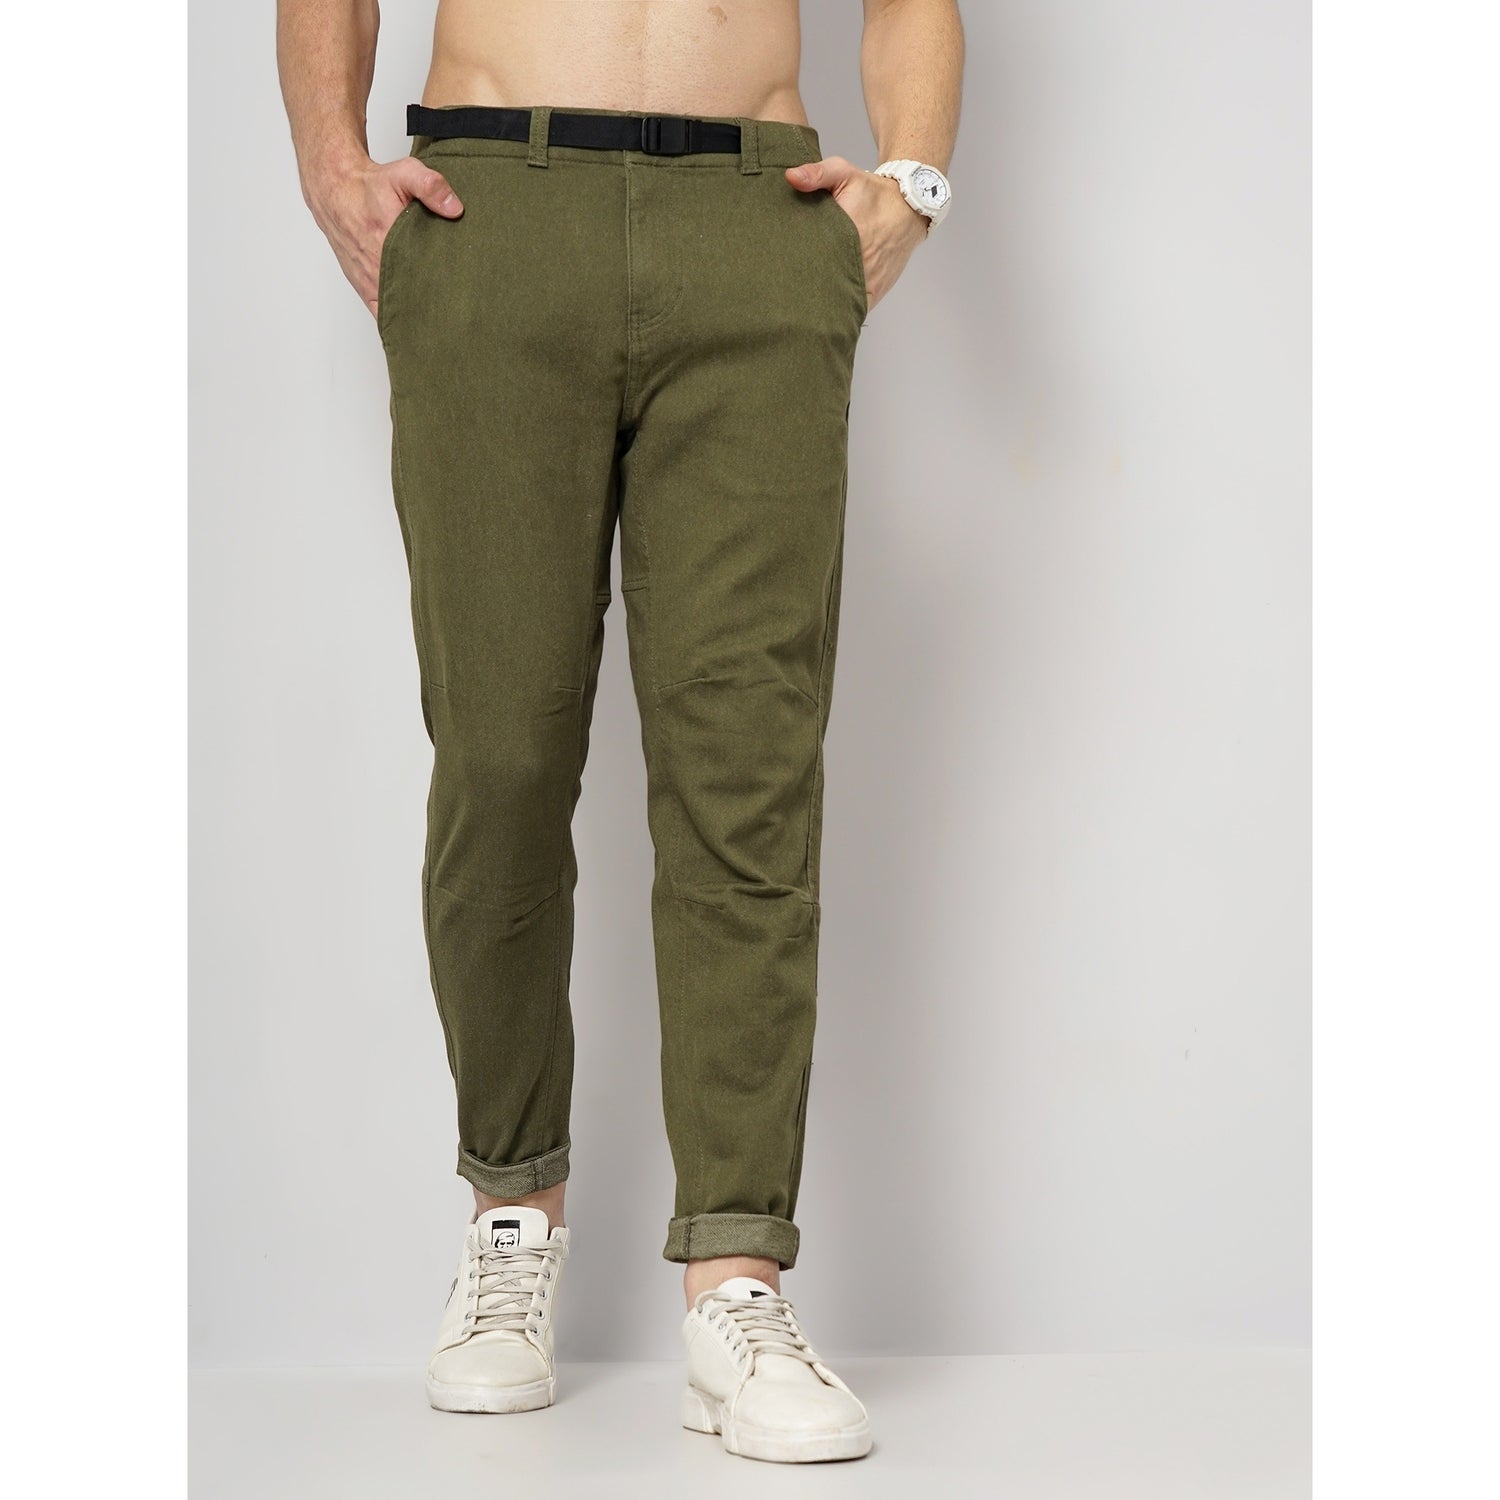 Khaki Cotton-Blend Fashion Pants